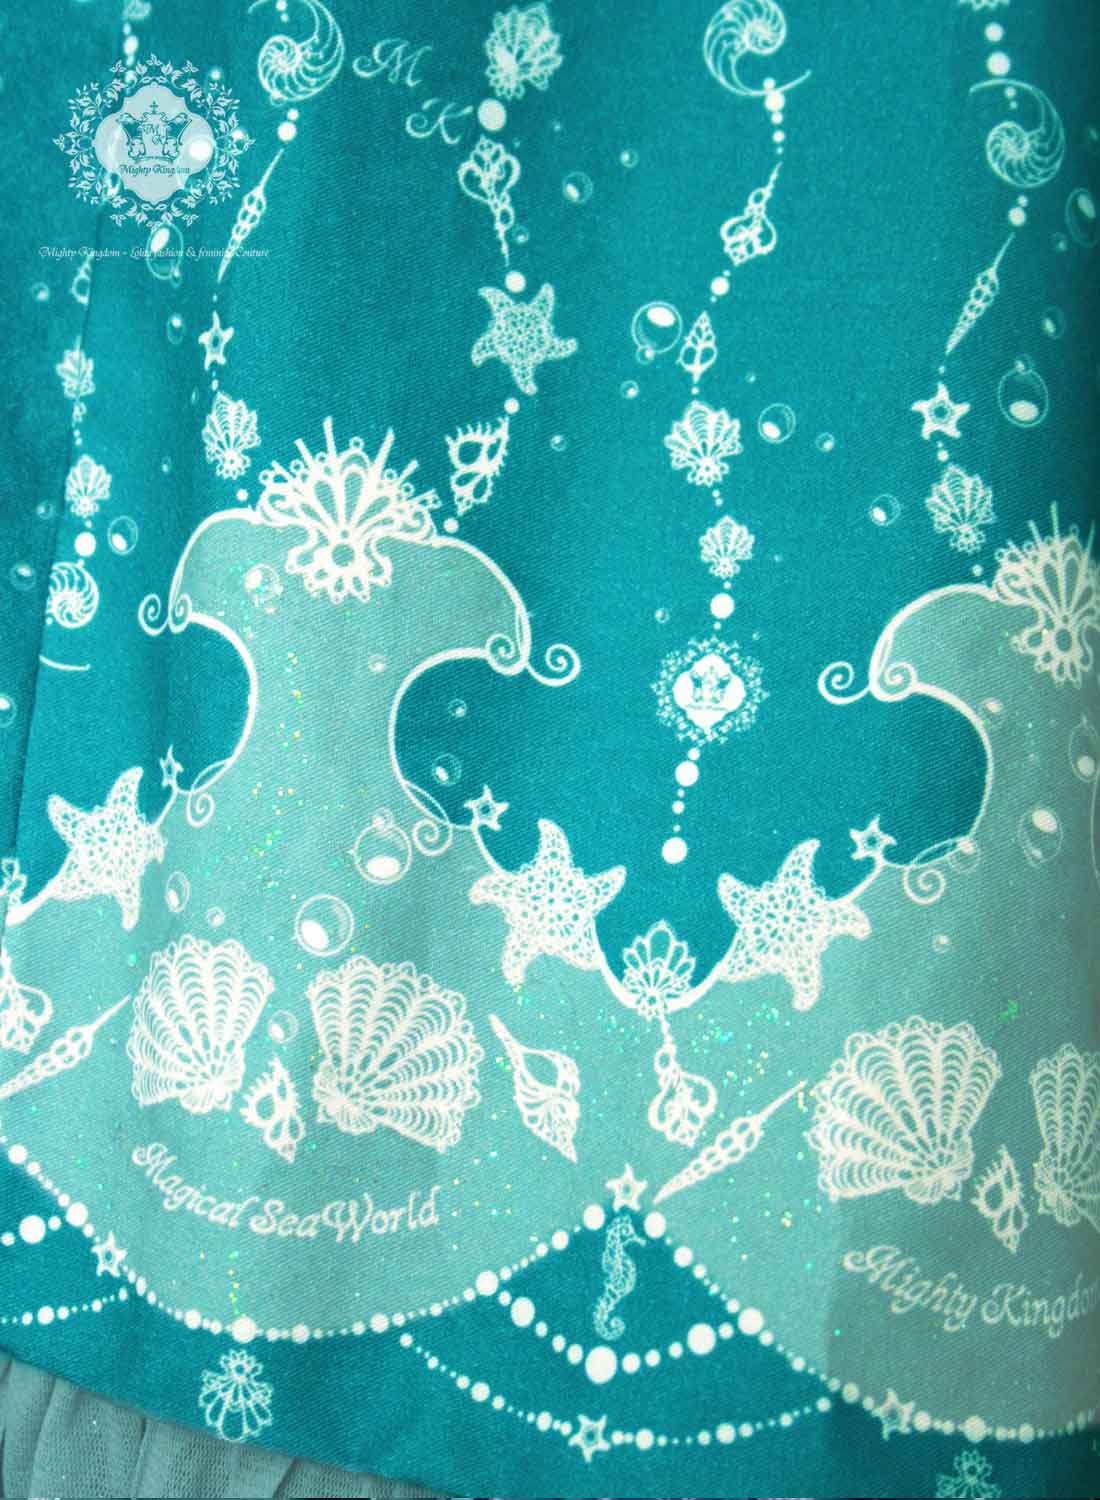 Detailansicht des Stoffmusters des Magical Sea World Kleides in teal mit Glitzer